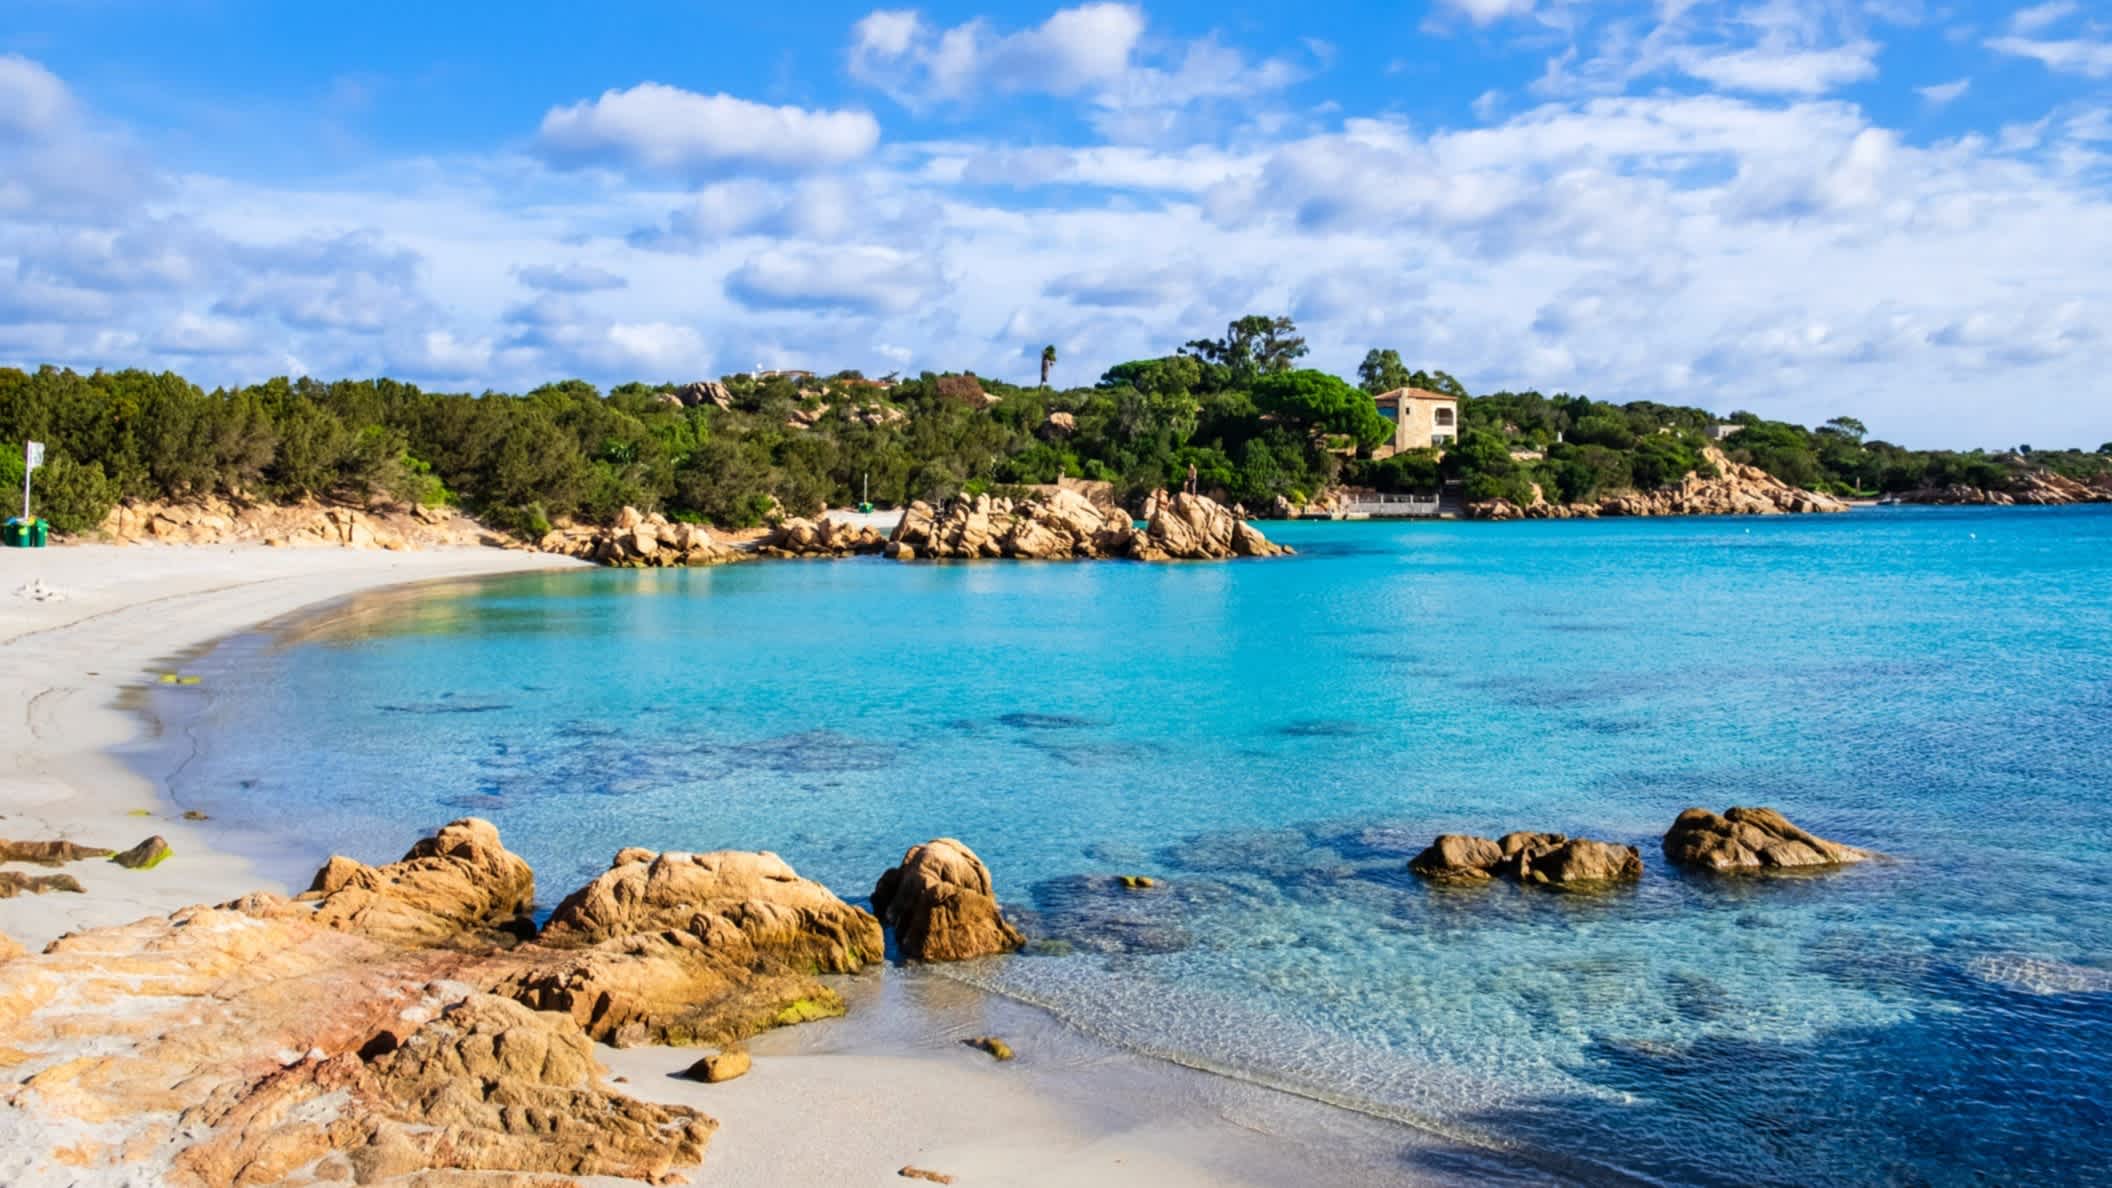 Blick zum Capriccioli-Strand an der Costa Smeralda, Sardinien, Italien mit Steinen im Bild sowie bei schönem Wetter.